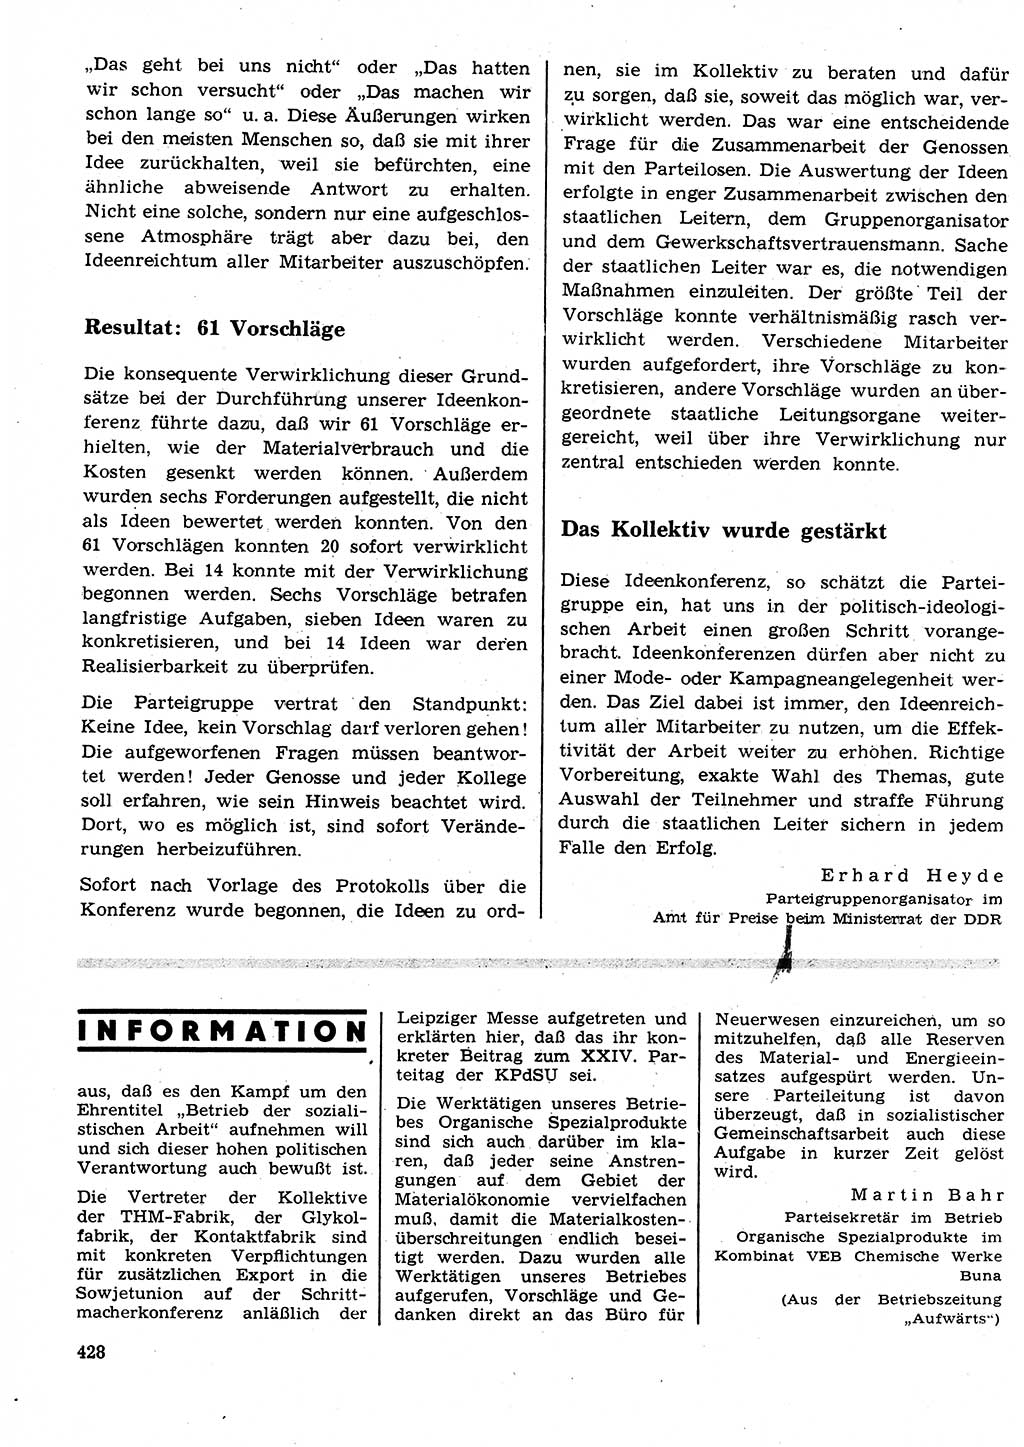 Neuer Weg (NW), Organ des Zentralkomitees (ZK) der SED (Sozialistische Einheitspartei Deutschlands) für Fragen des Parteilebens, 26. Jahrgang [Deutsche Demokratische Republik (DDR)] 1971, Seite 428 (NW ZK SED DDR 1971, S. 428)